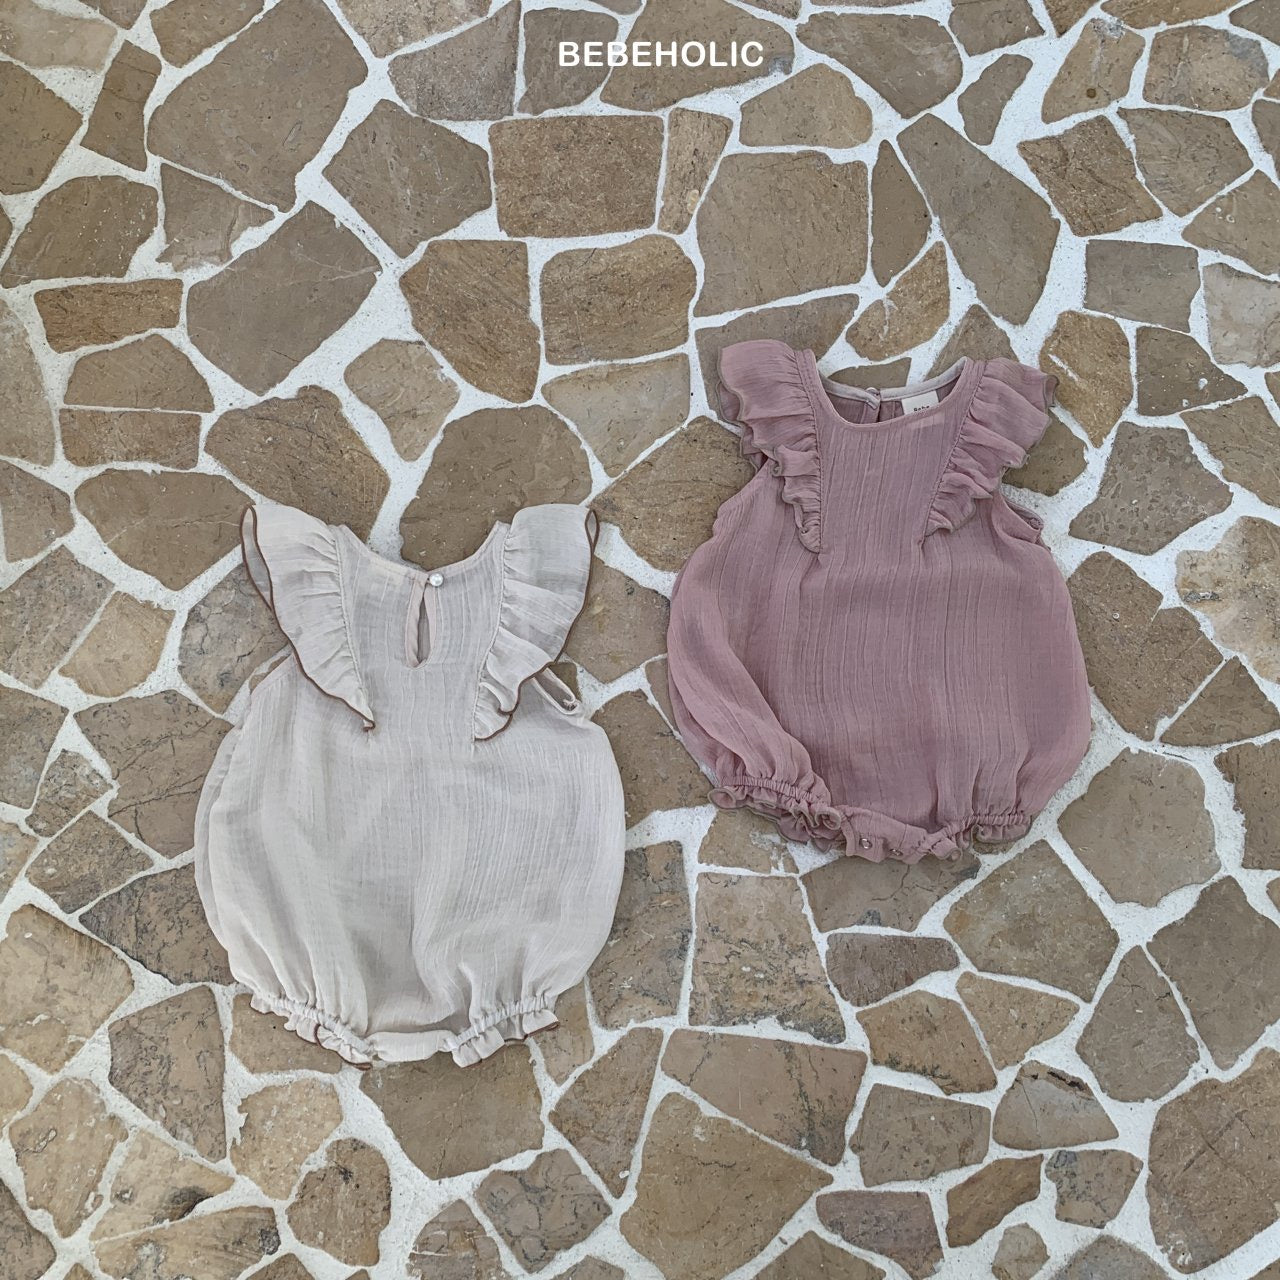 Zwei Lily Wing Body Suits auf einem Mosaikfliesenboden. Einer ist grau und der andere staubrosa, beide mit gerüschten Ärmeln und gerafftem Ausschnitt. Der Text „Bebe Holic Strampler